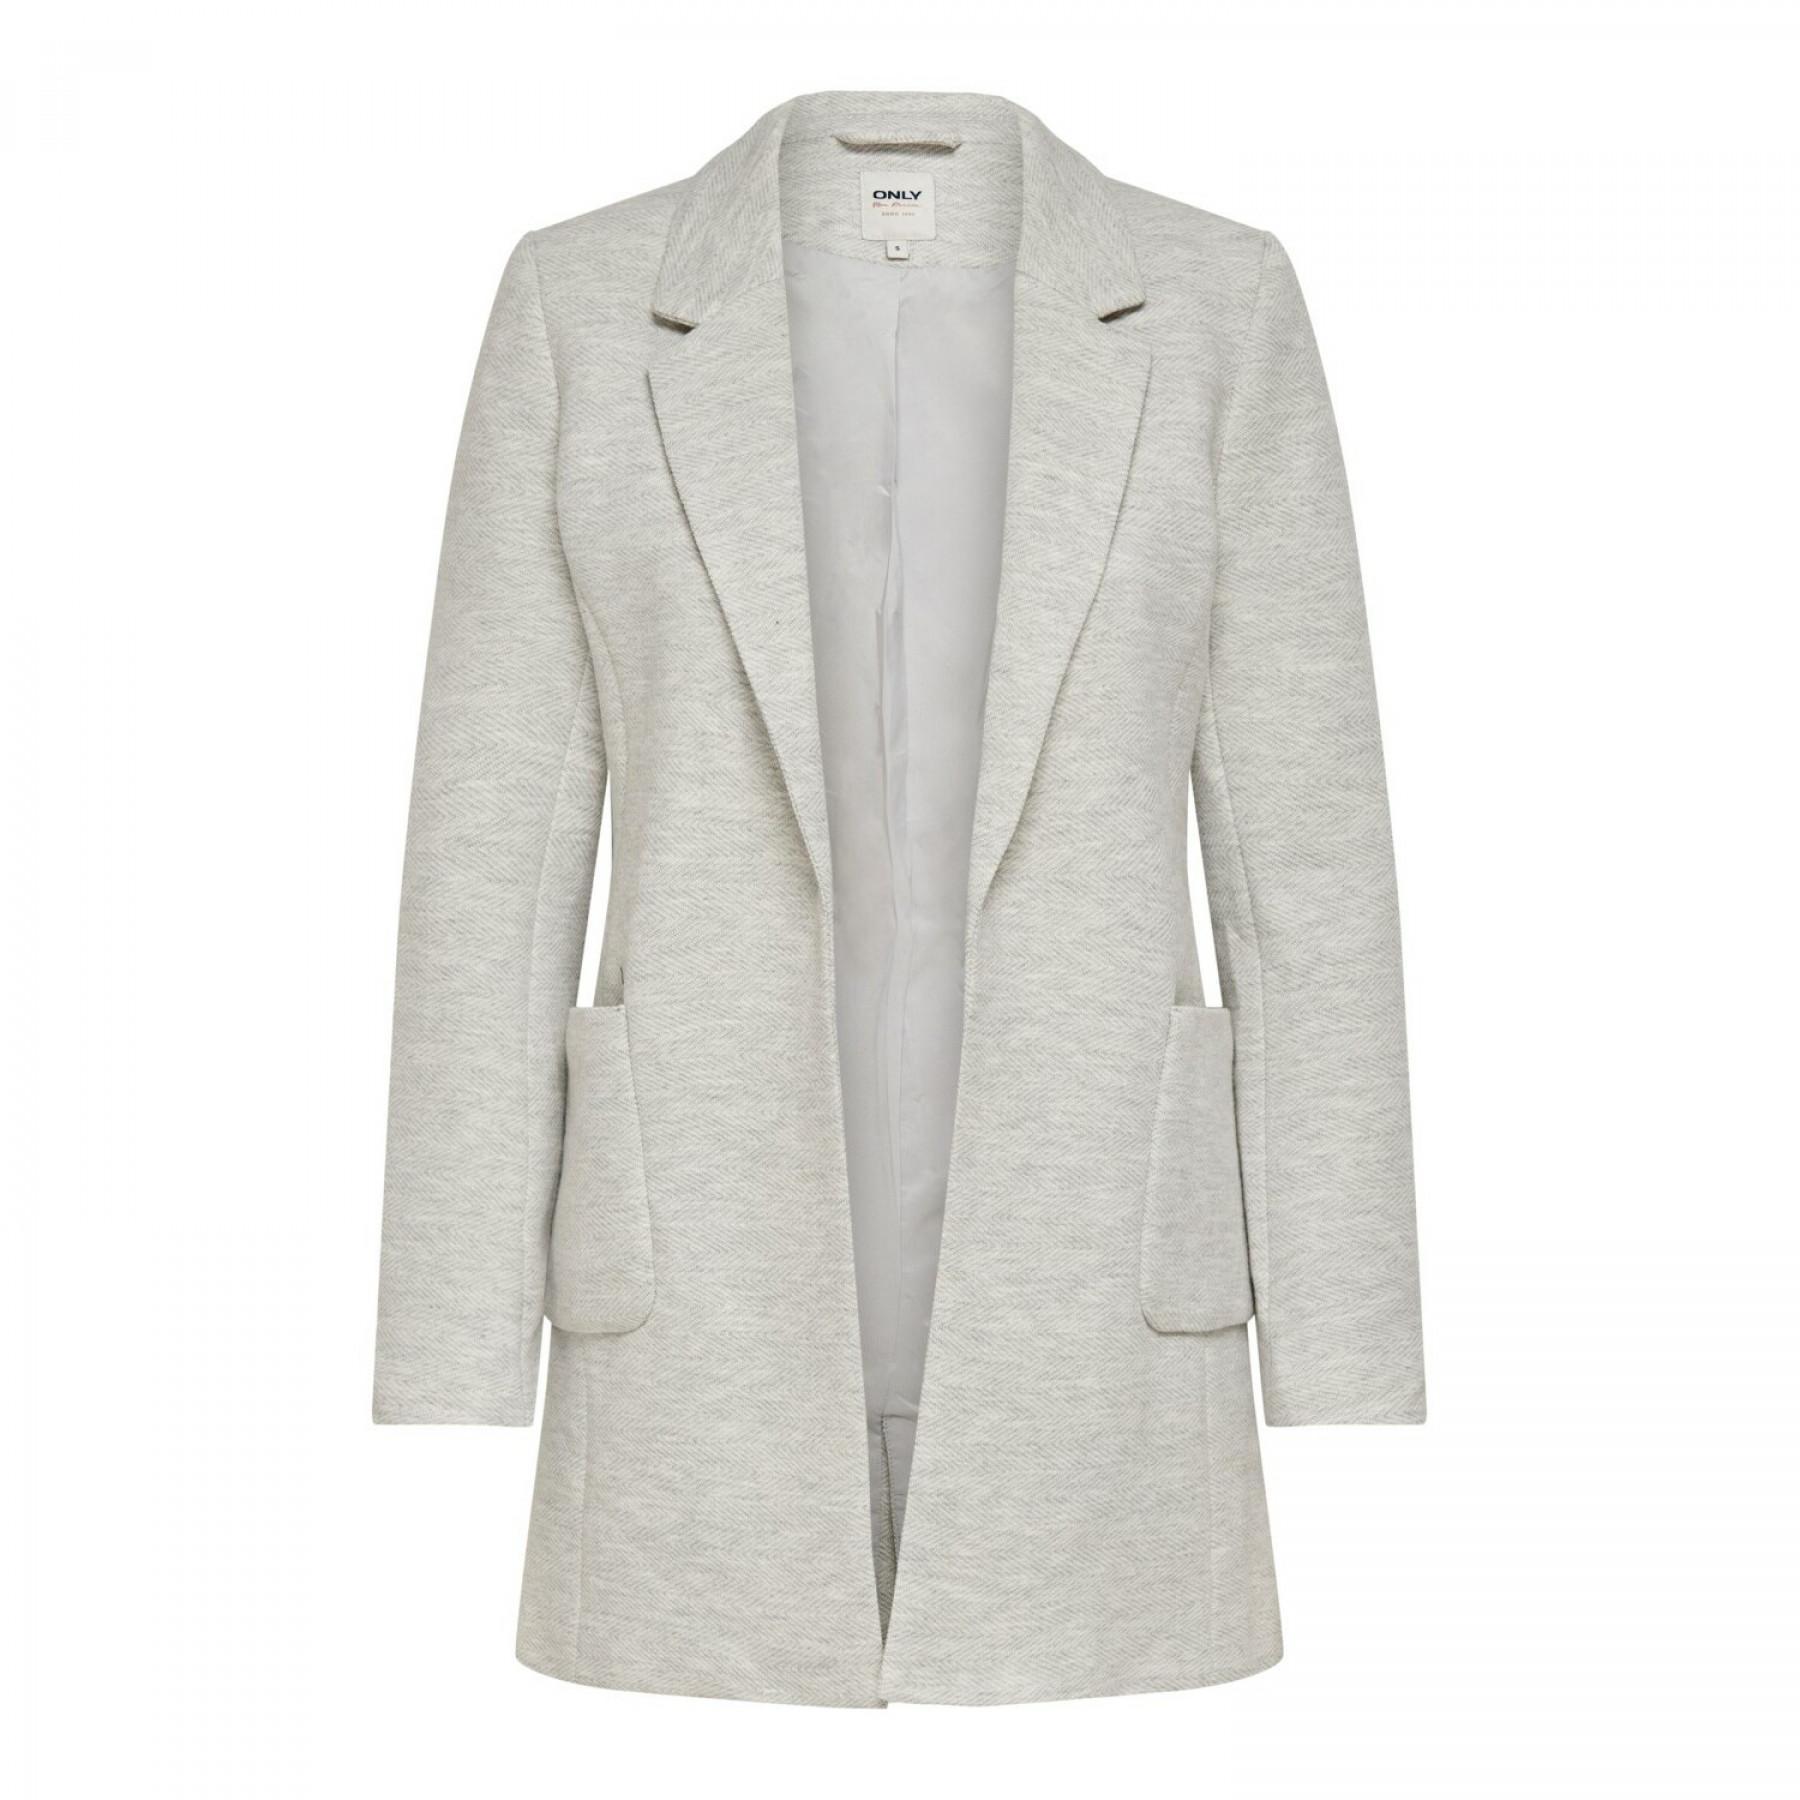 Women's jacket Only onlbaker-linea coatigan